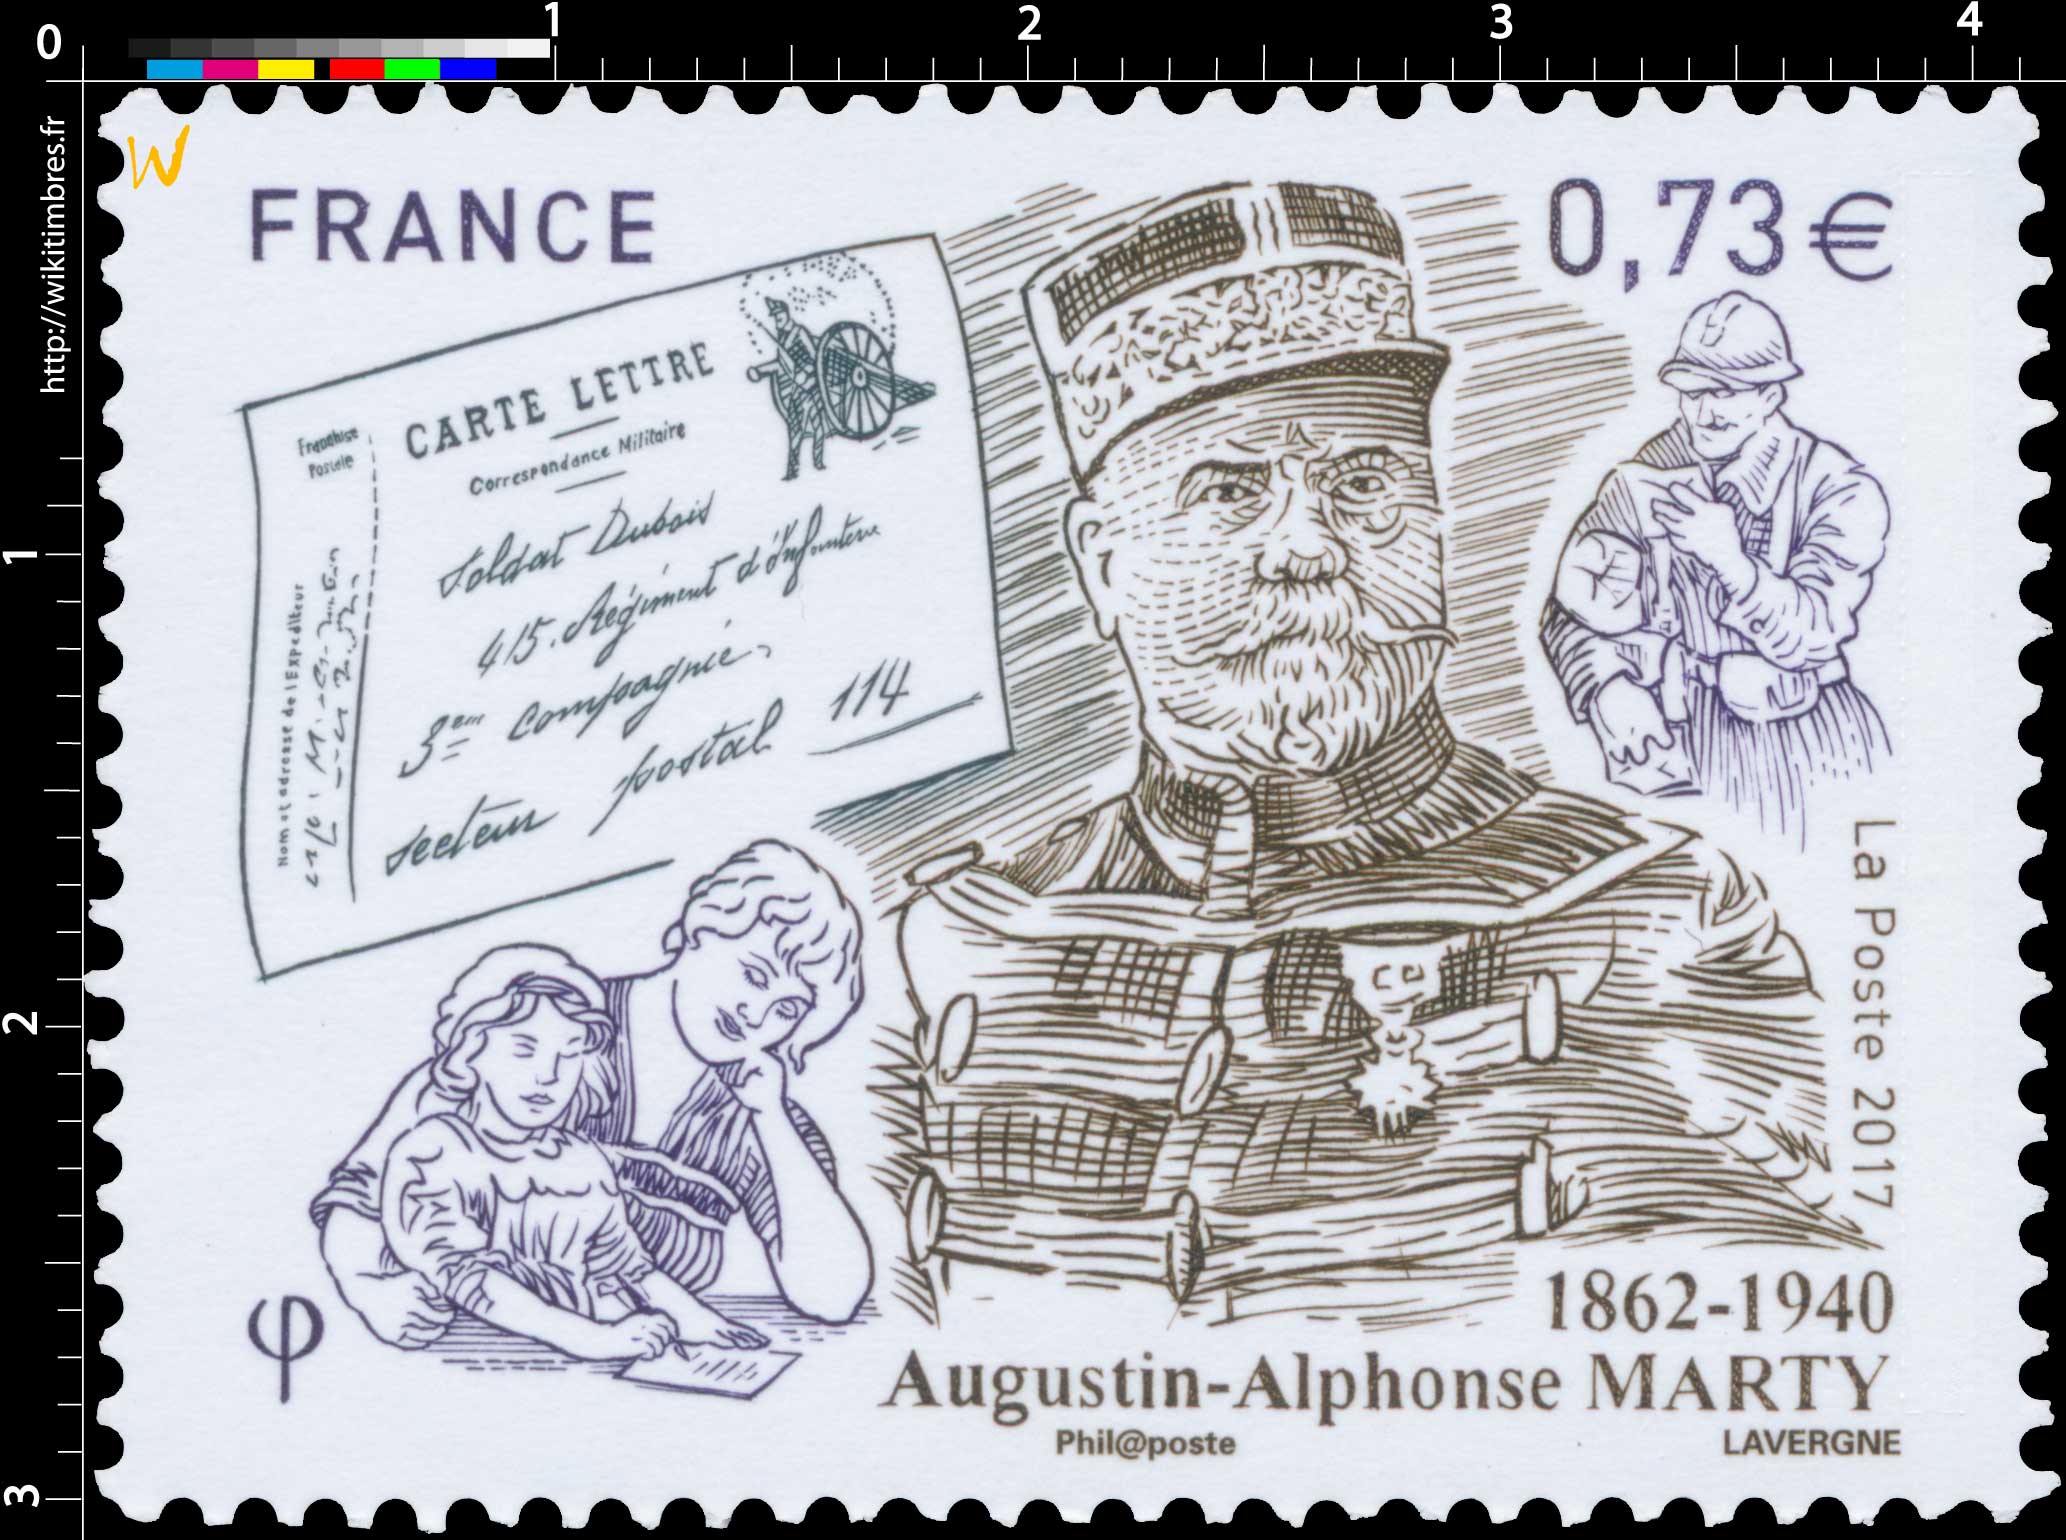 2017 AUGUSTIN-ALPHONSE MARTY 1862-1940